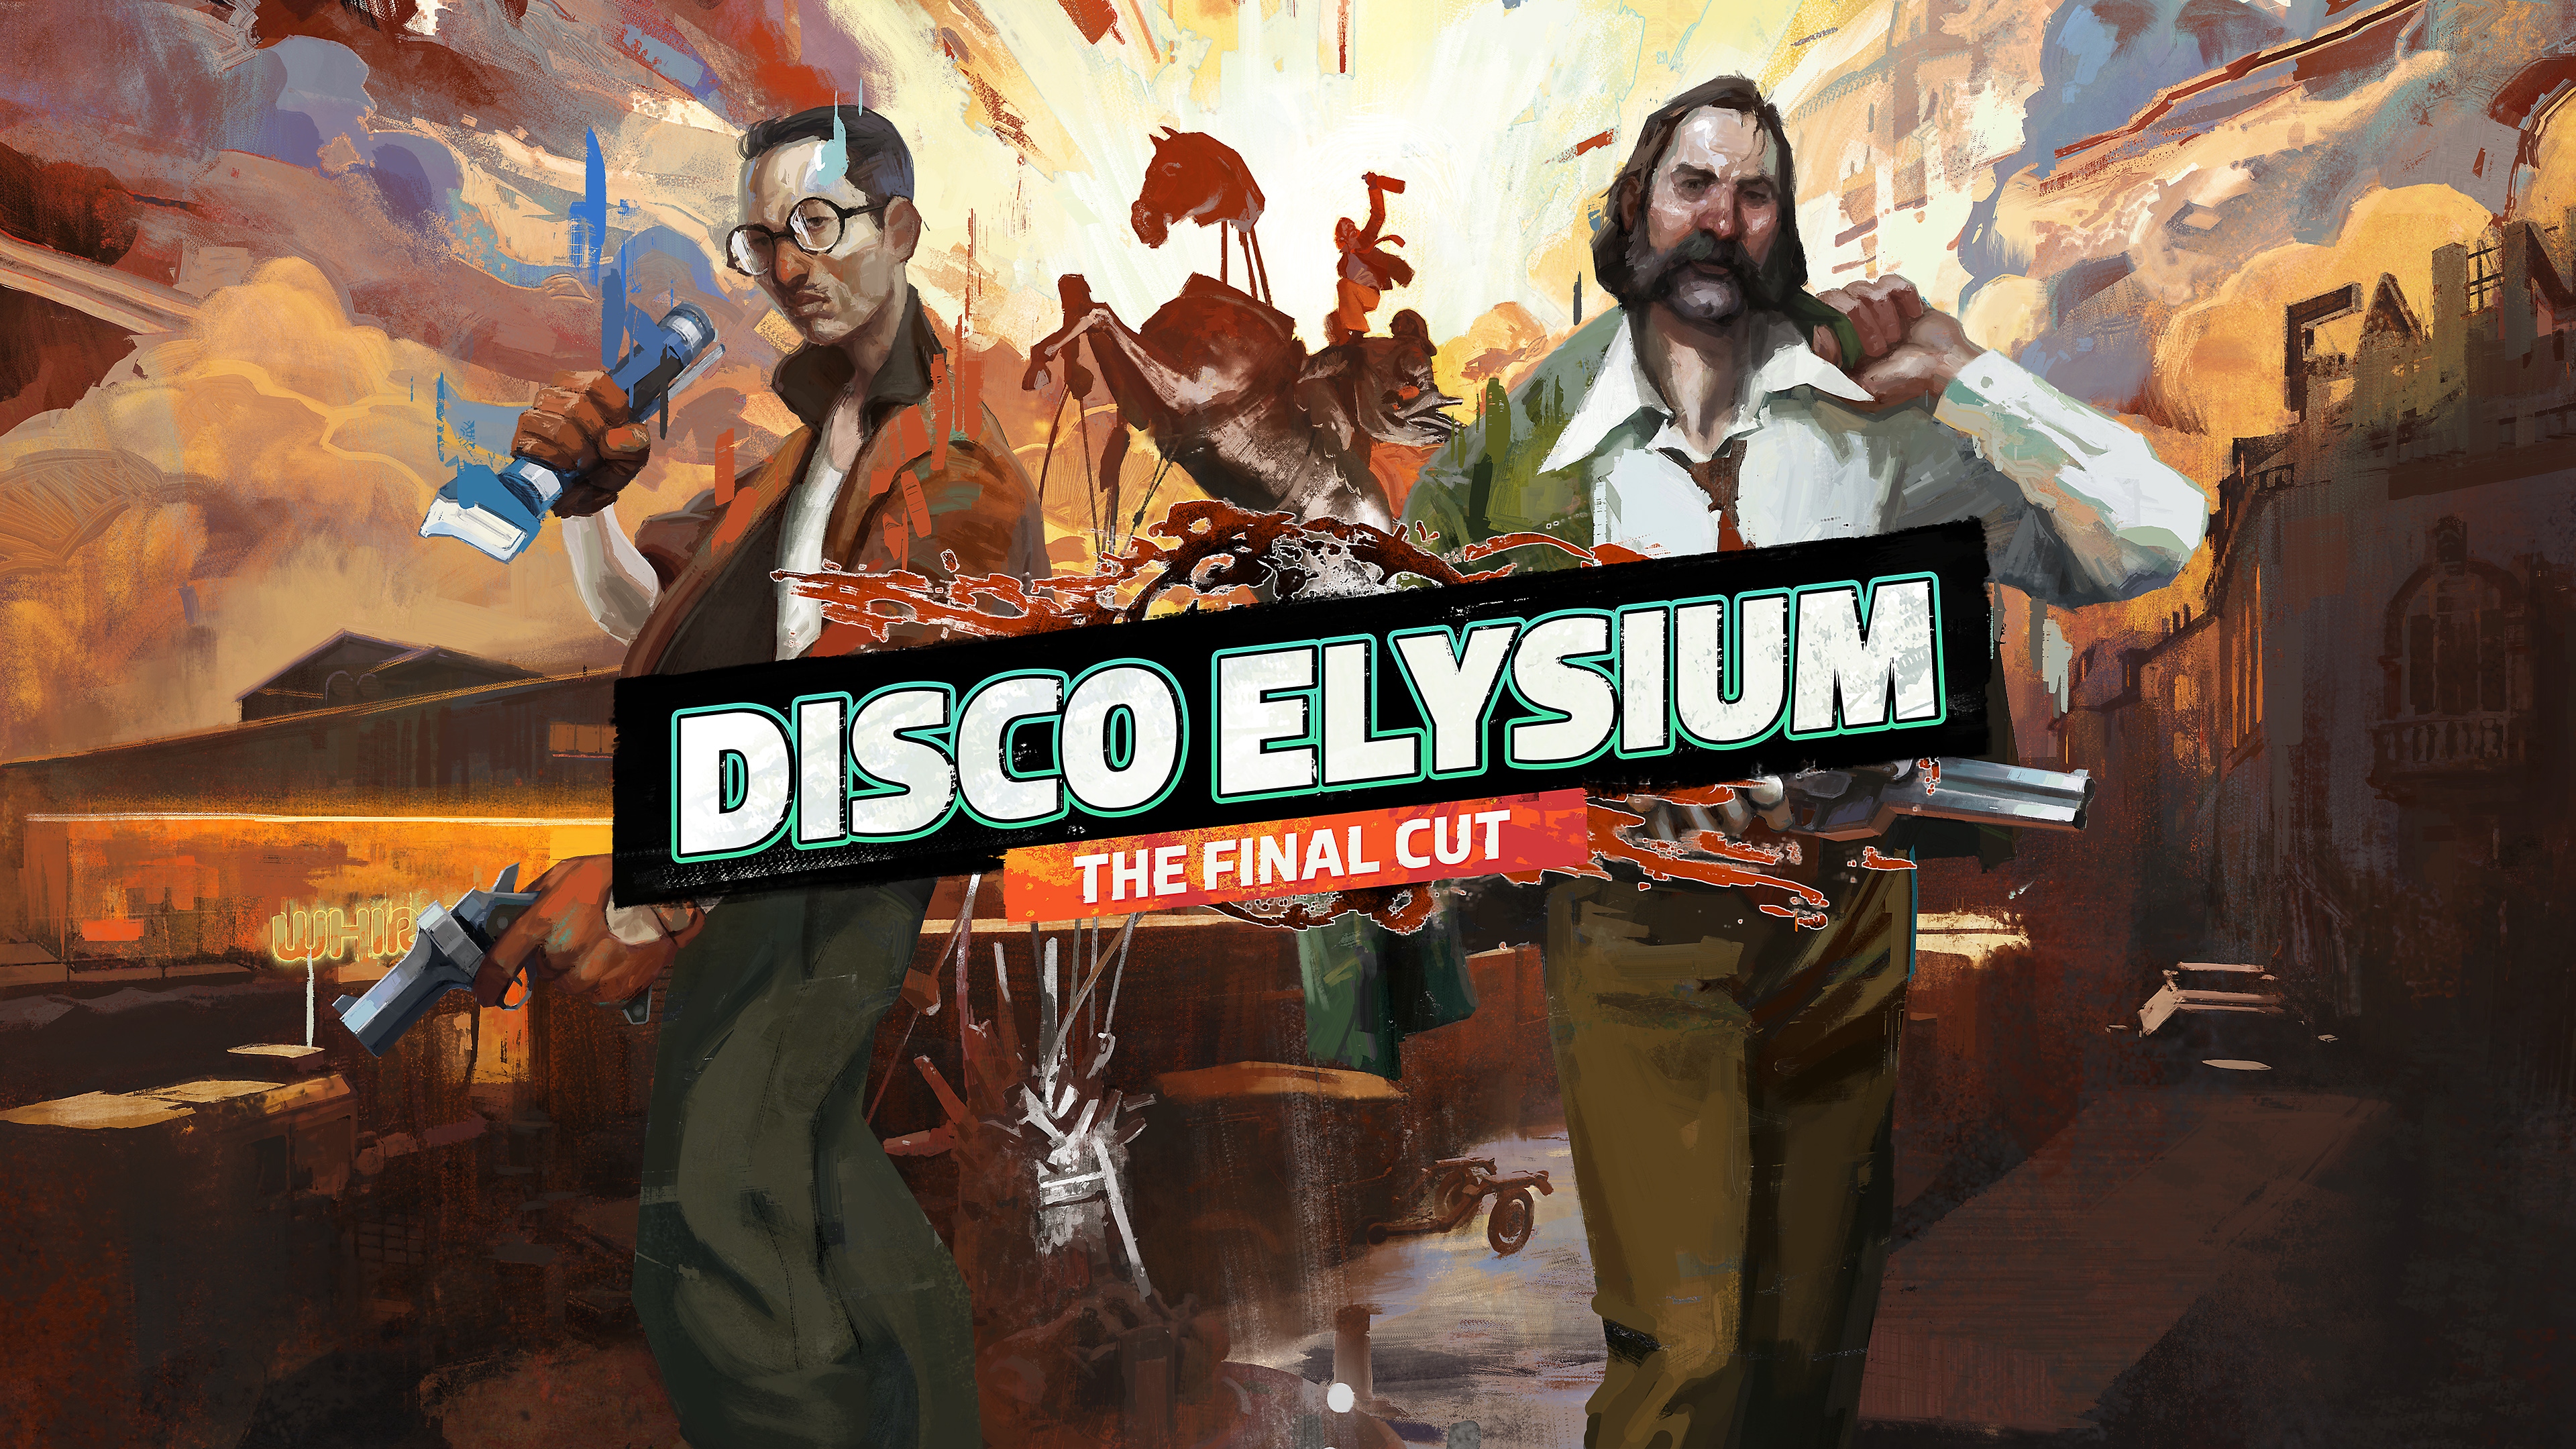 Disco Elysium - The Final Cut - bande-annonce de lancement | PS5, PS4